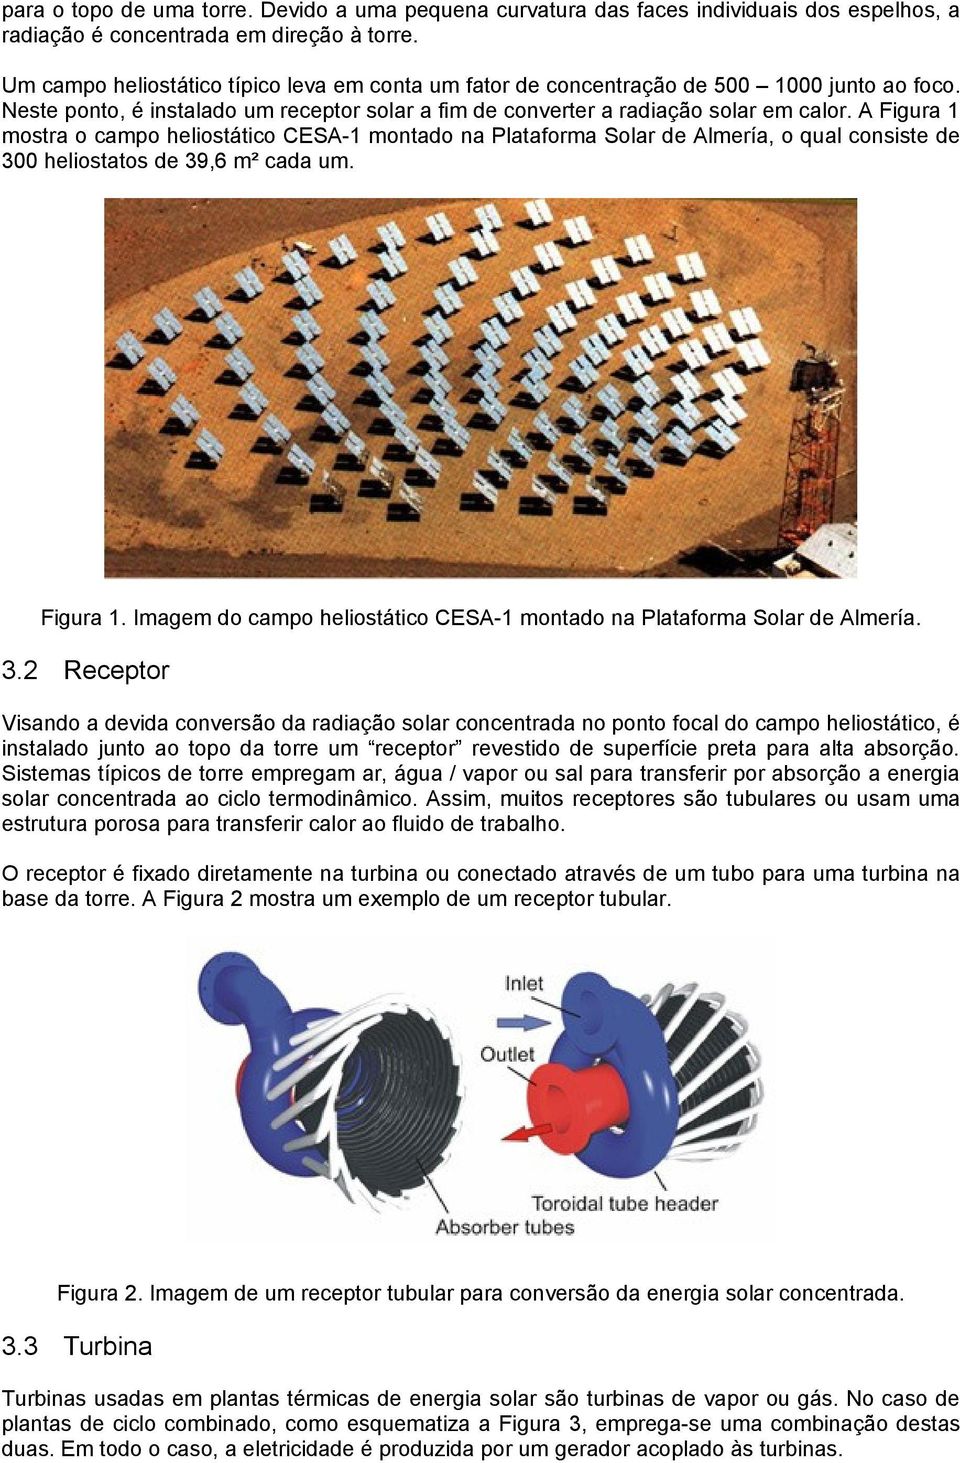 A Figura 1 mostra o campo heliostático CESA-1 montado na Plataforma Solar de Almería, o qual consiste de 300 heliostatos de 39,6 m² cada um. Figura 1. Imagem do campo heliostático CESA-1 montado na Plataforma Solar de Almería.